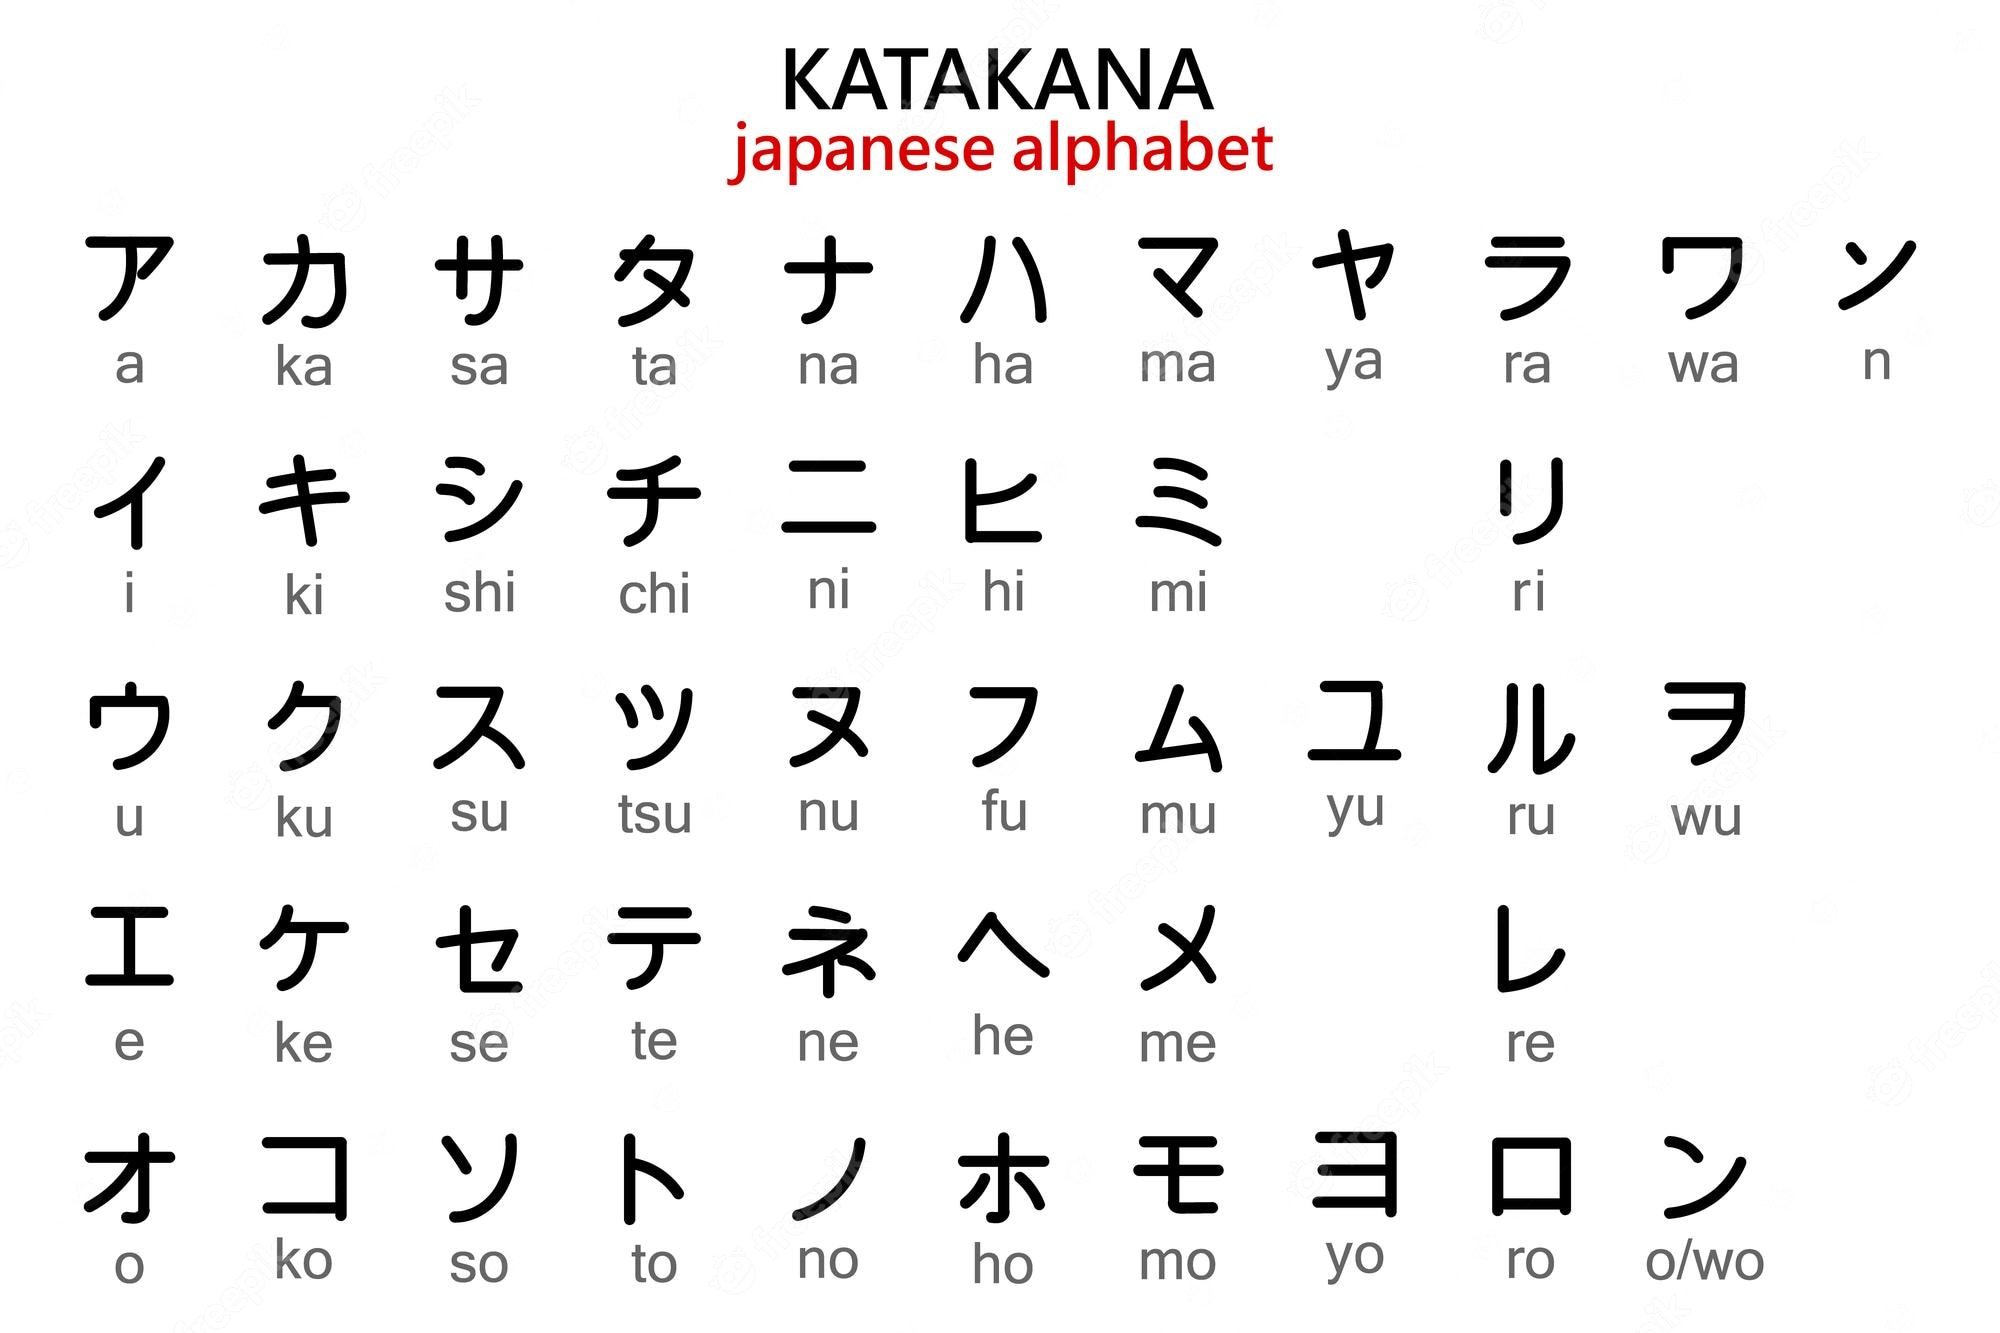 Katakana - Série 9 - Questionário